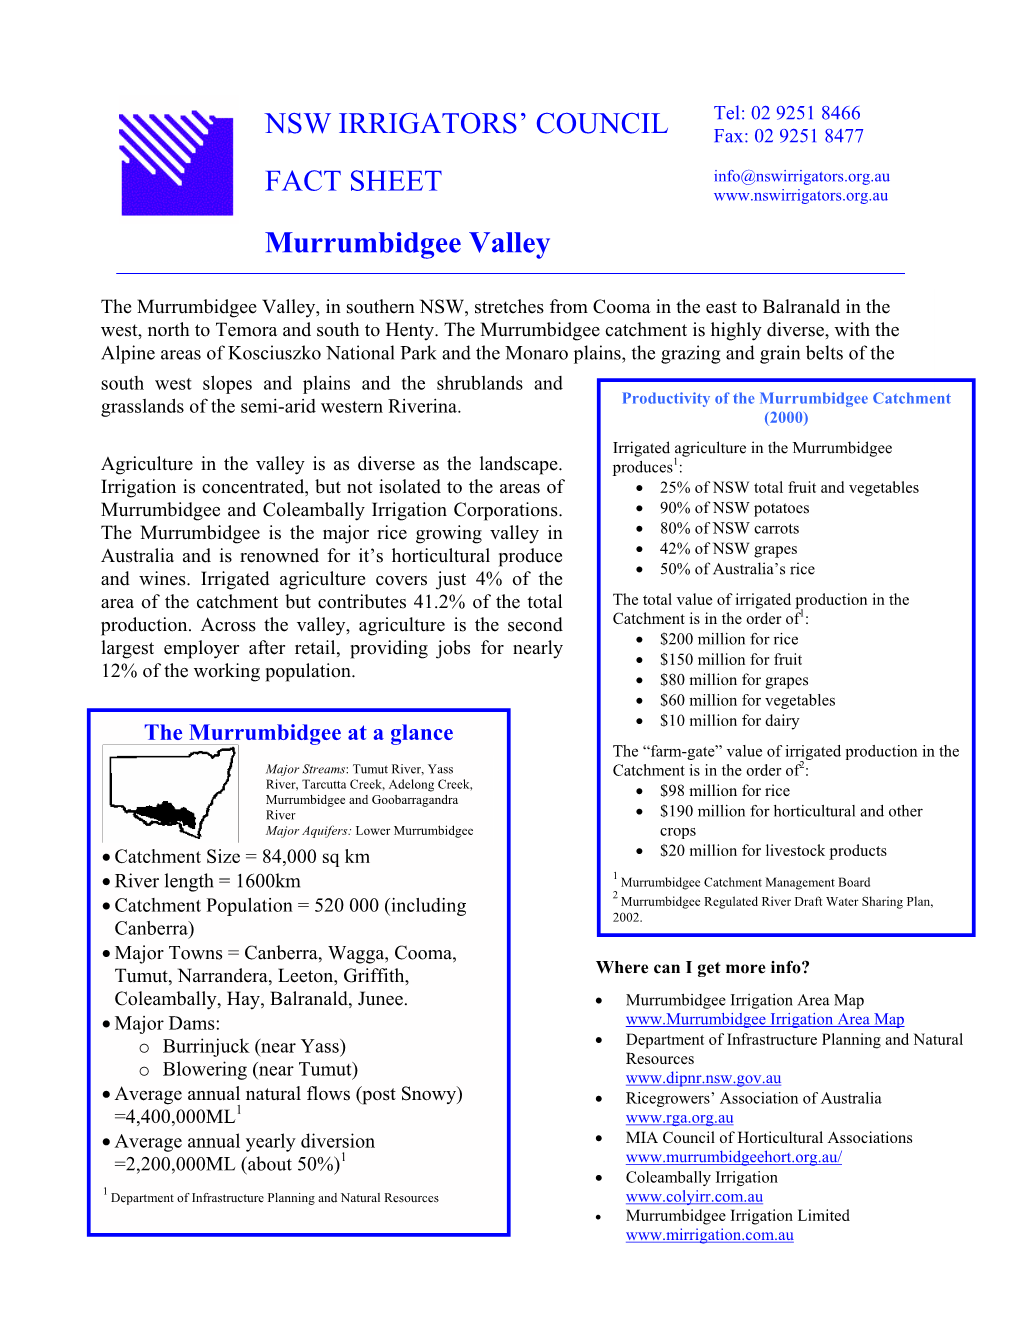 NSW IRRIGATORS' COUNCIL FACT SHEET Murrumbidgee Valley